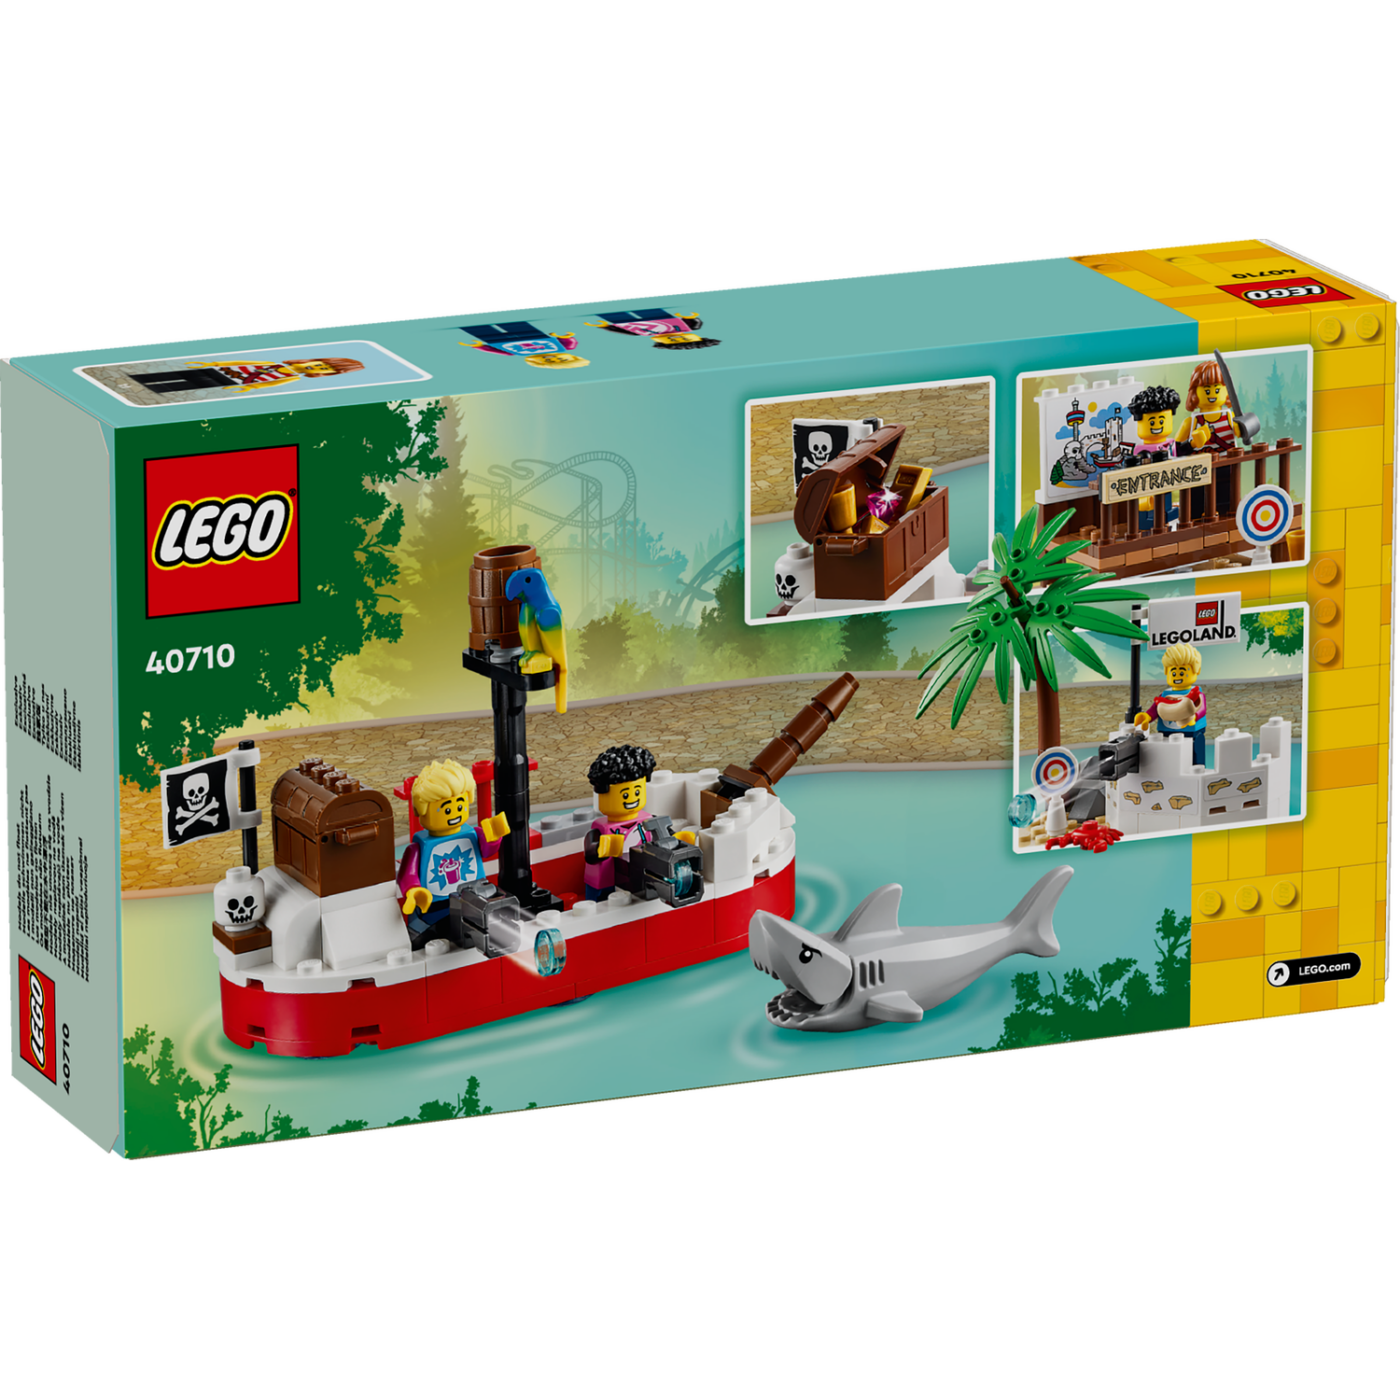 New LEGOLAND-exclusive 40710 Legoland Pirate Splash Battle revealed!4